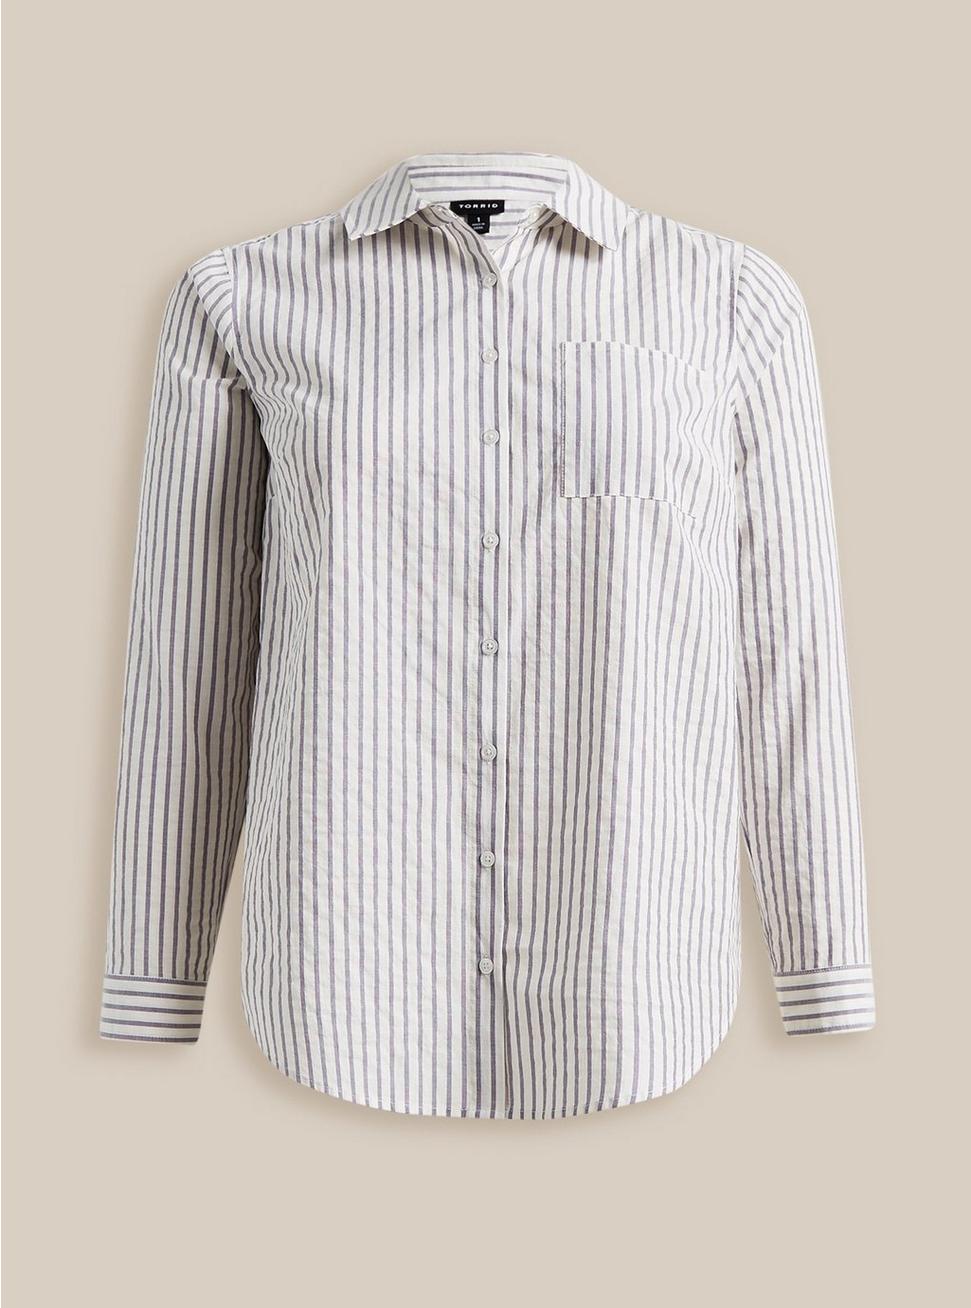 Plus Size Lizzie Cotton Button-Up Long Sleeve Shirt, BLUE STRIPE, hi-res